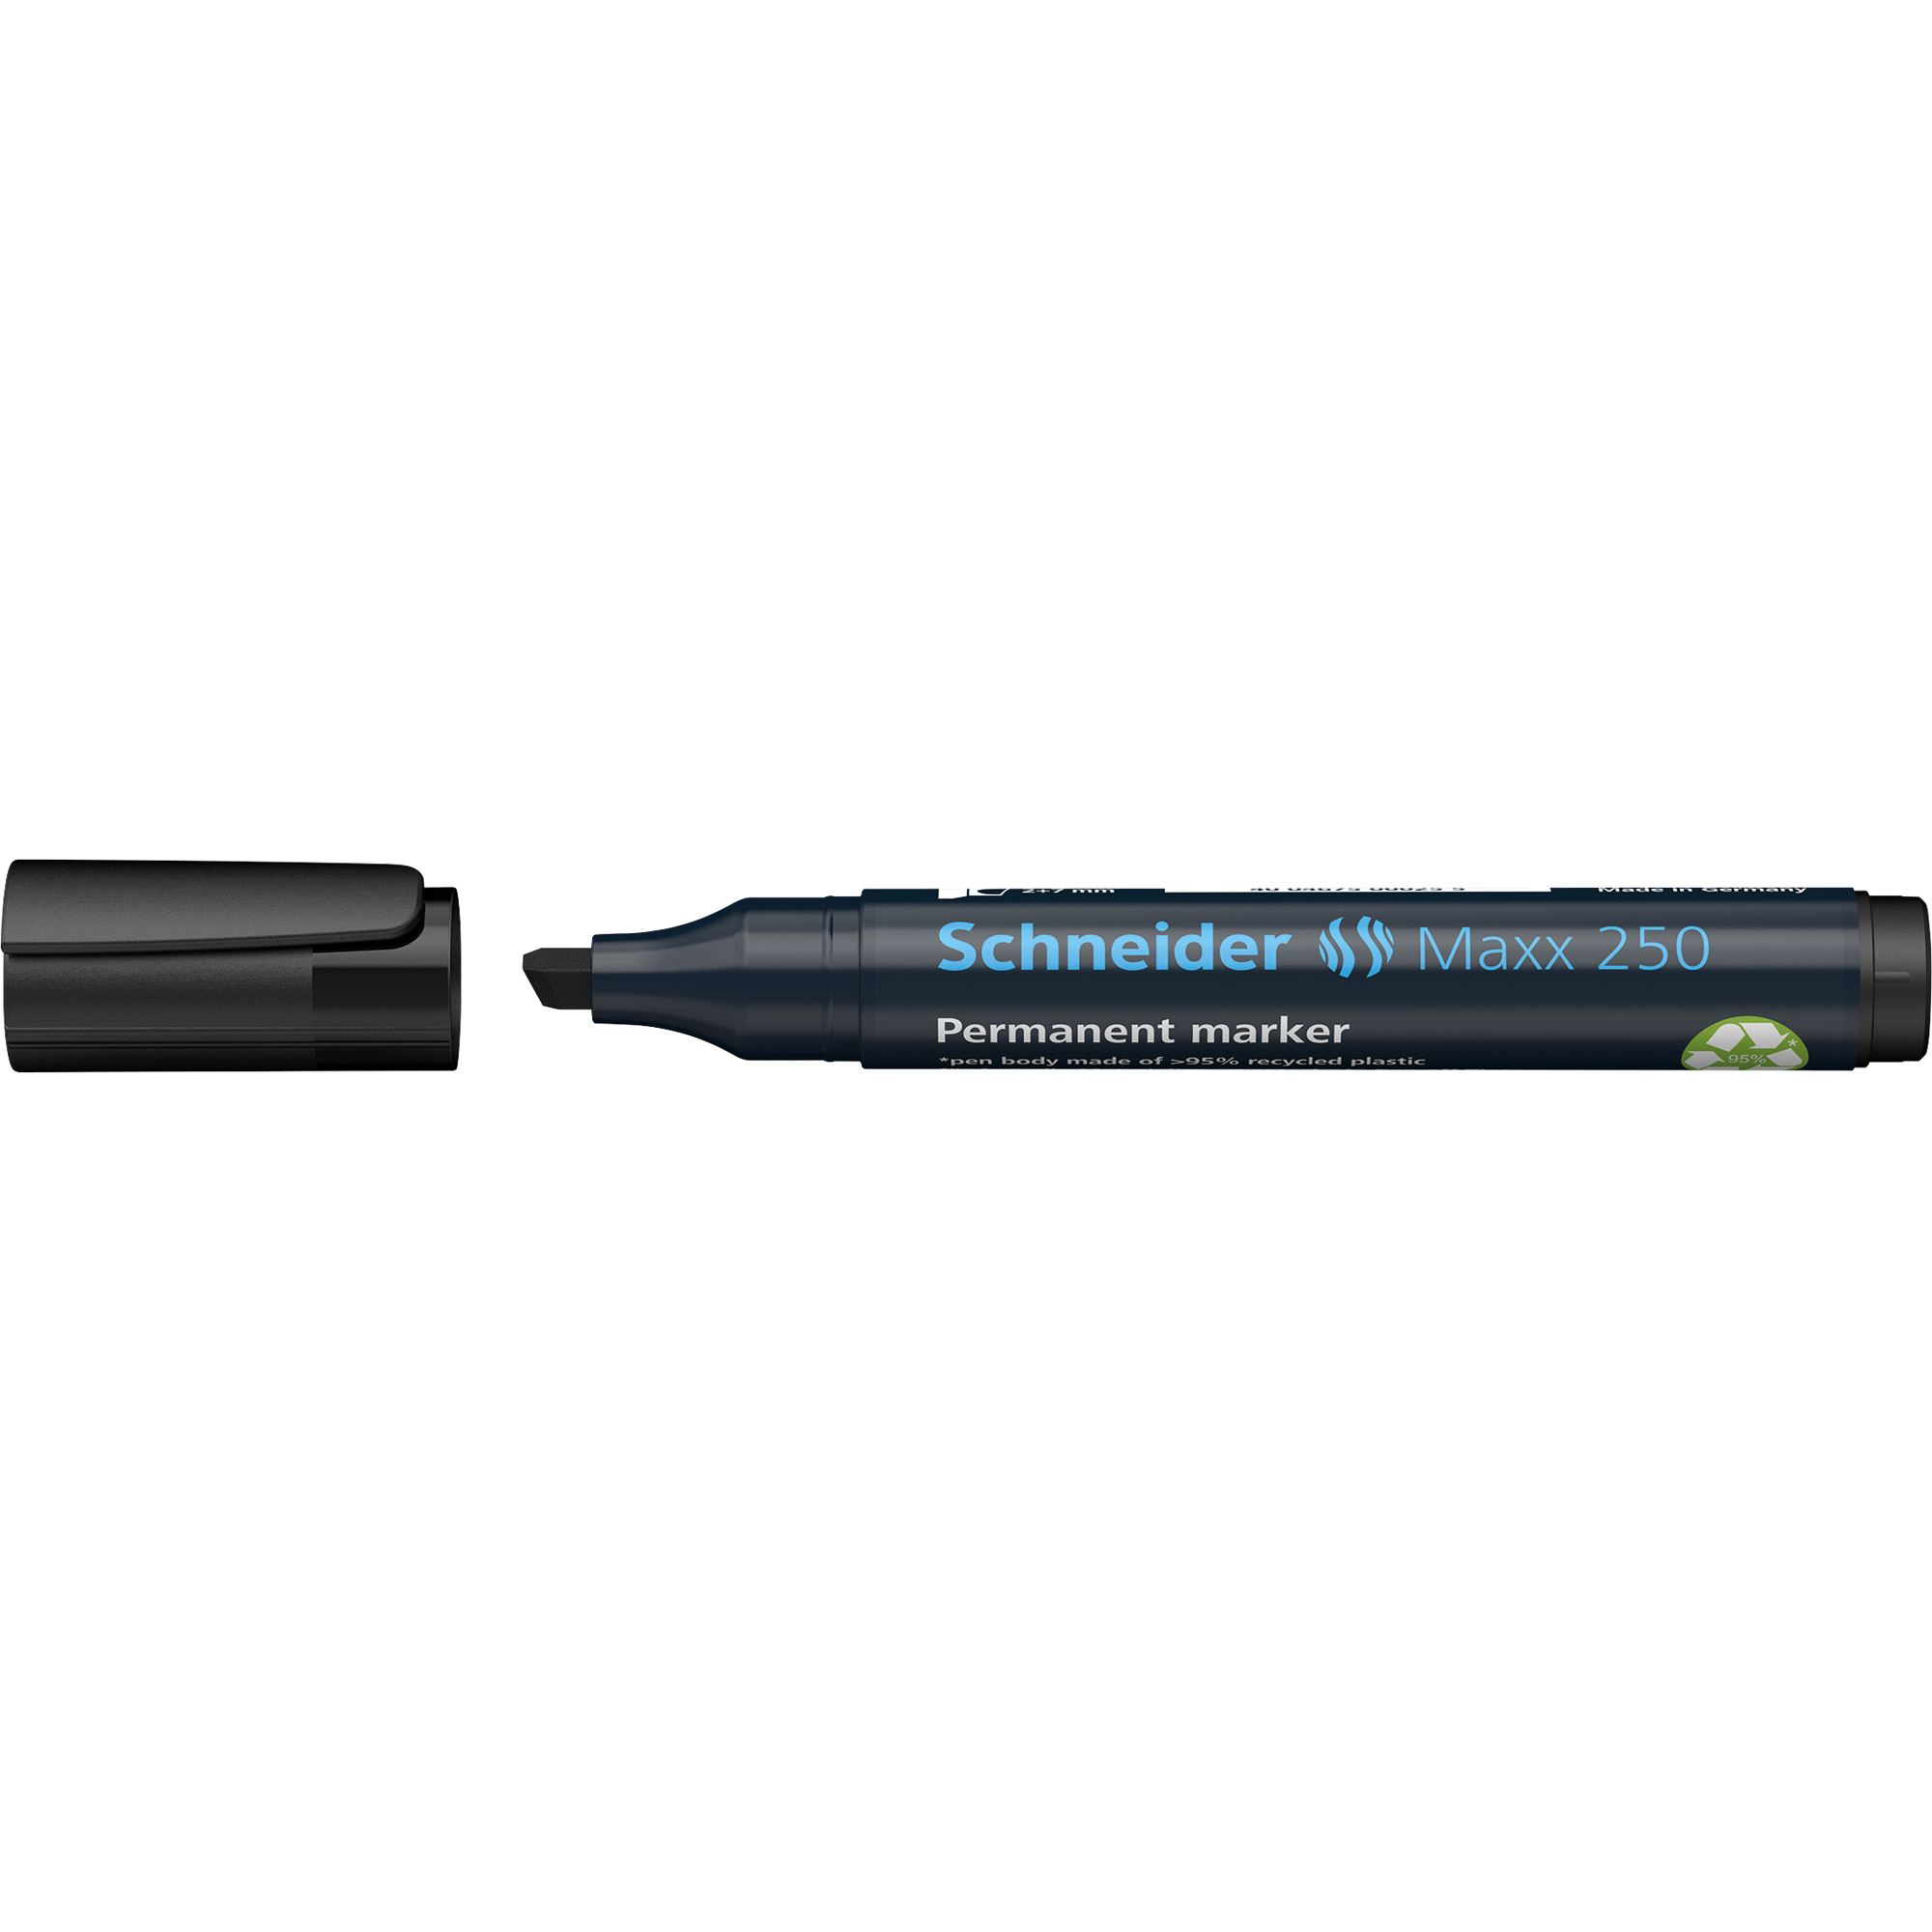 Schneider Permanentmarker Maxx 250 schwarz